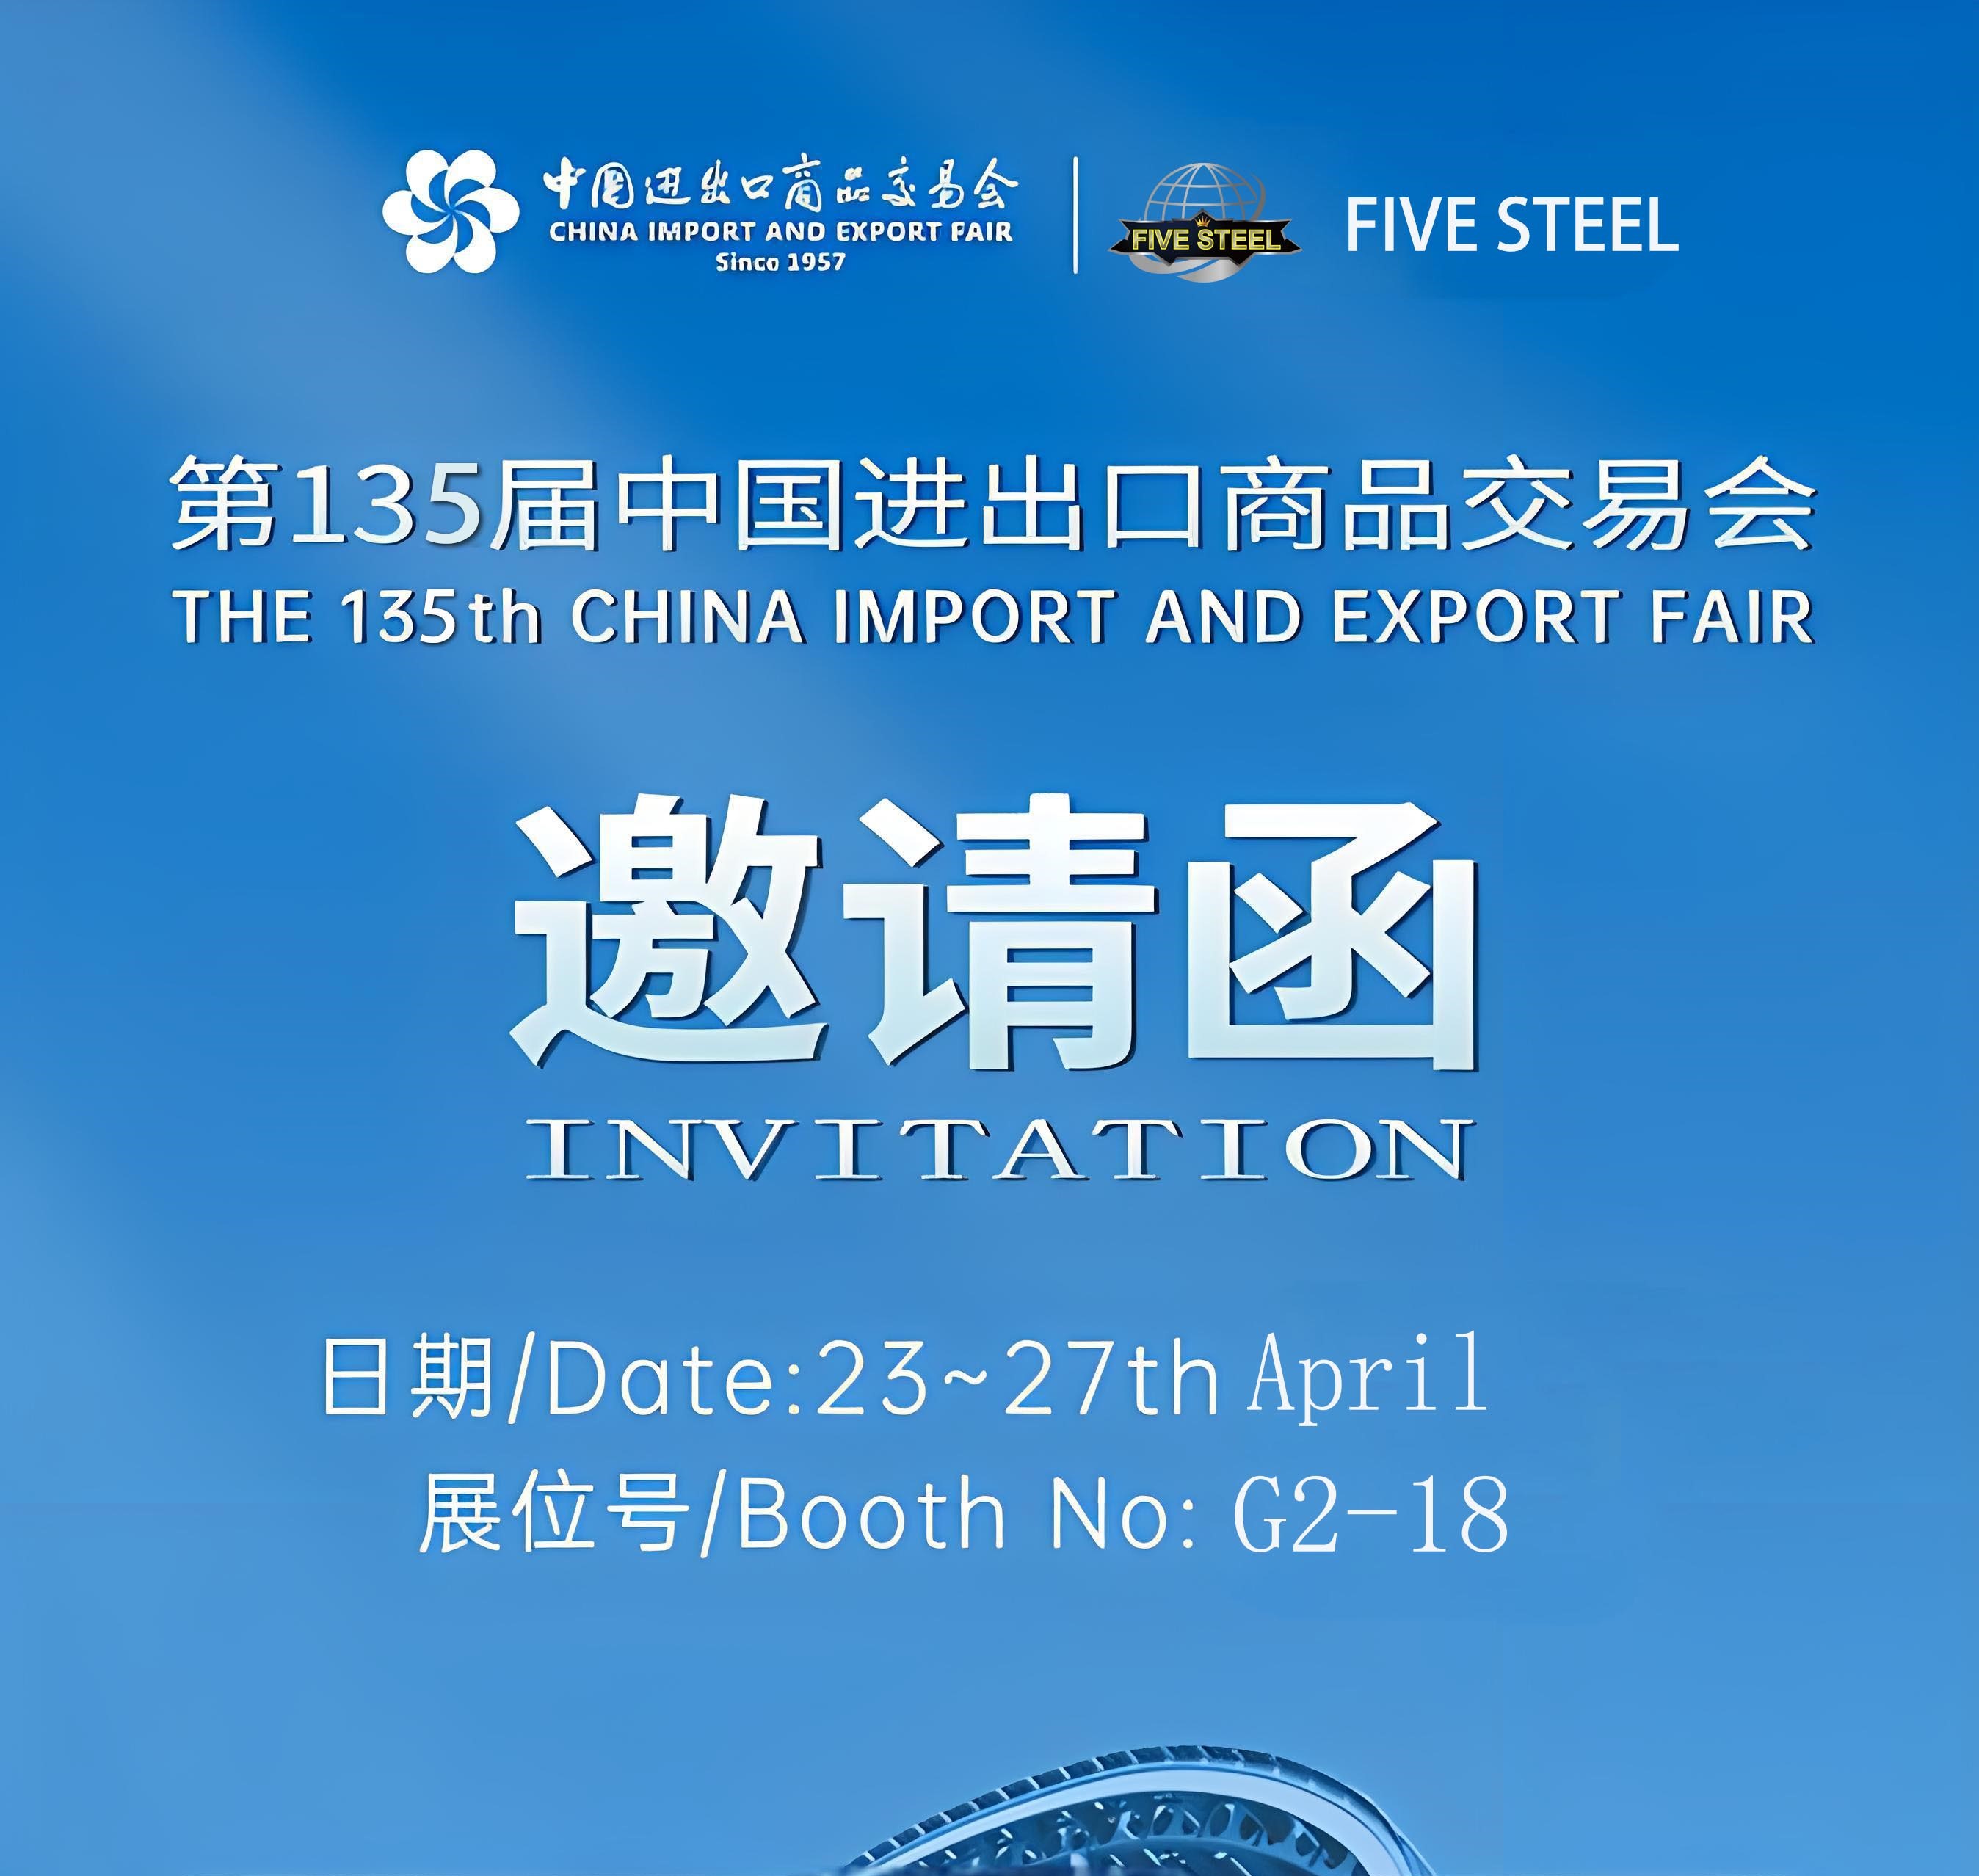 फाइव्ह स्टील तुम्हाला 2024 च्या 135 व्या चीन आयात आणि निर्यात मेळ्यासाठी आमंत्रित करते